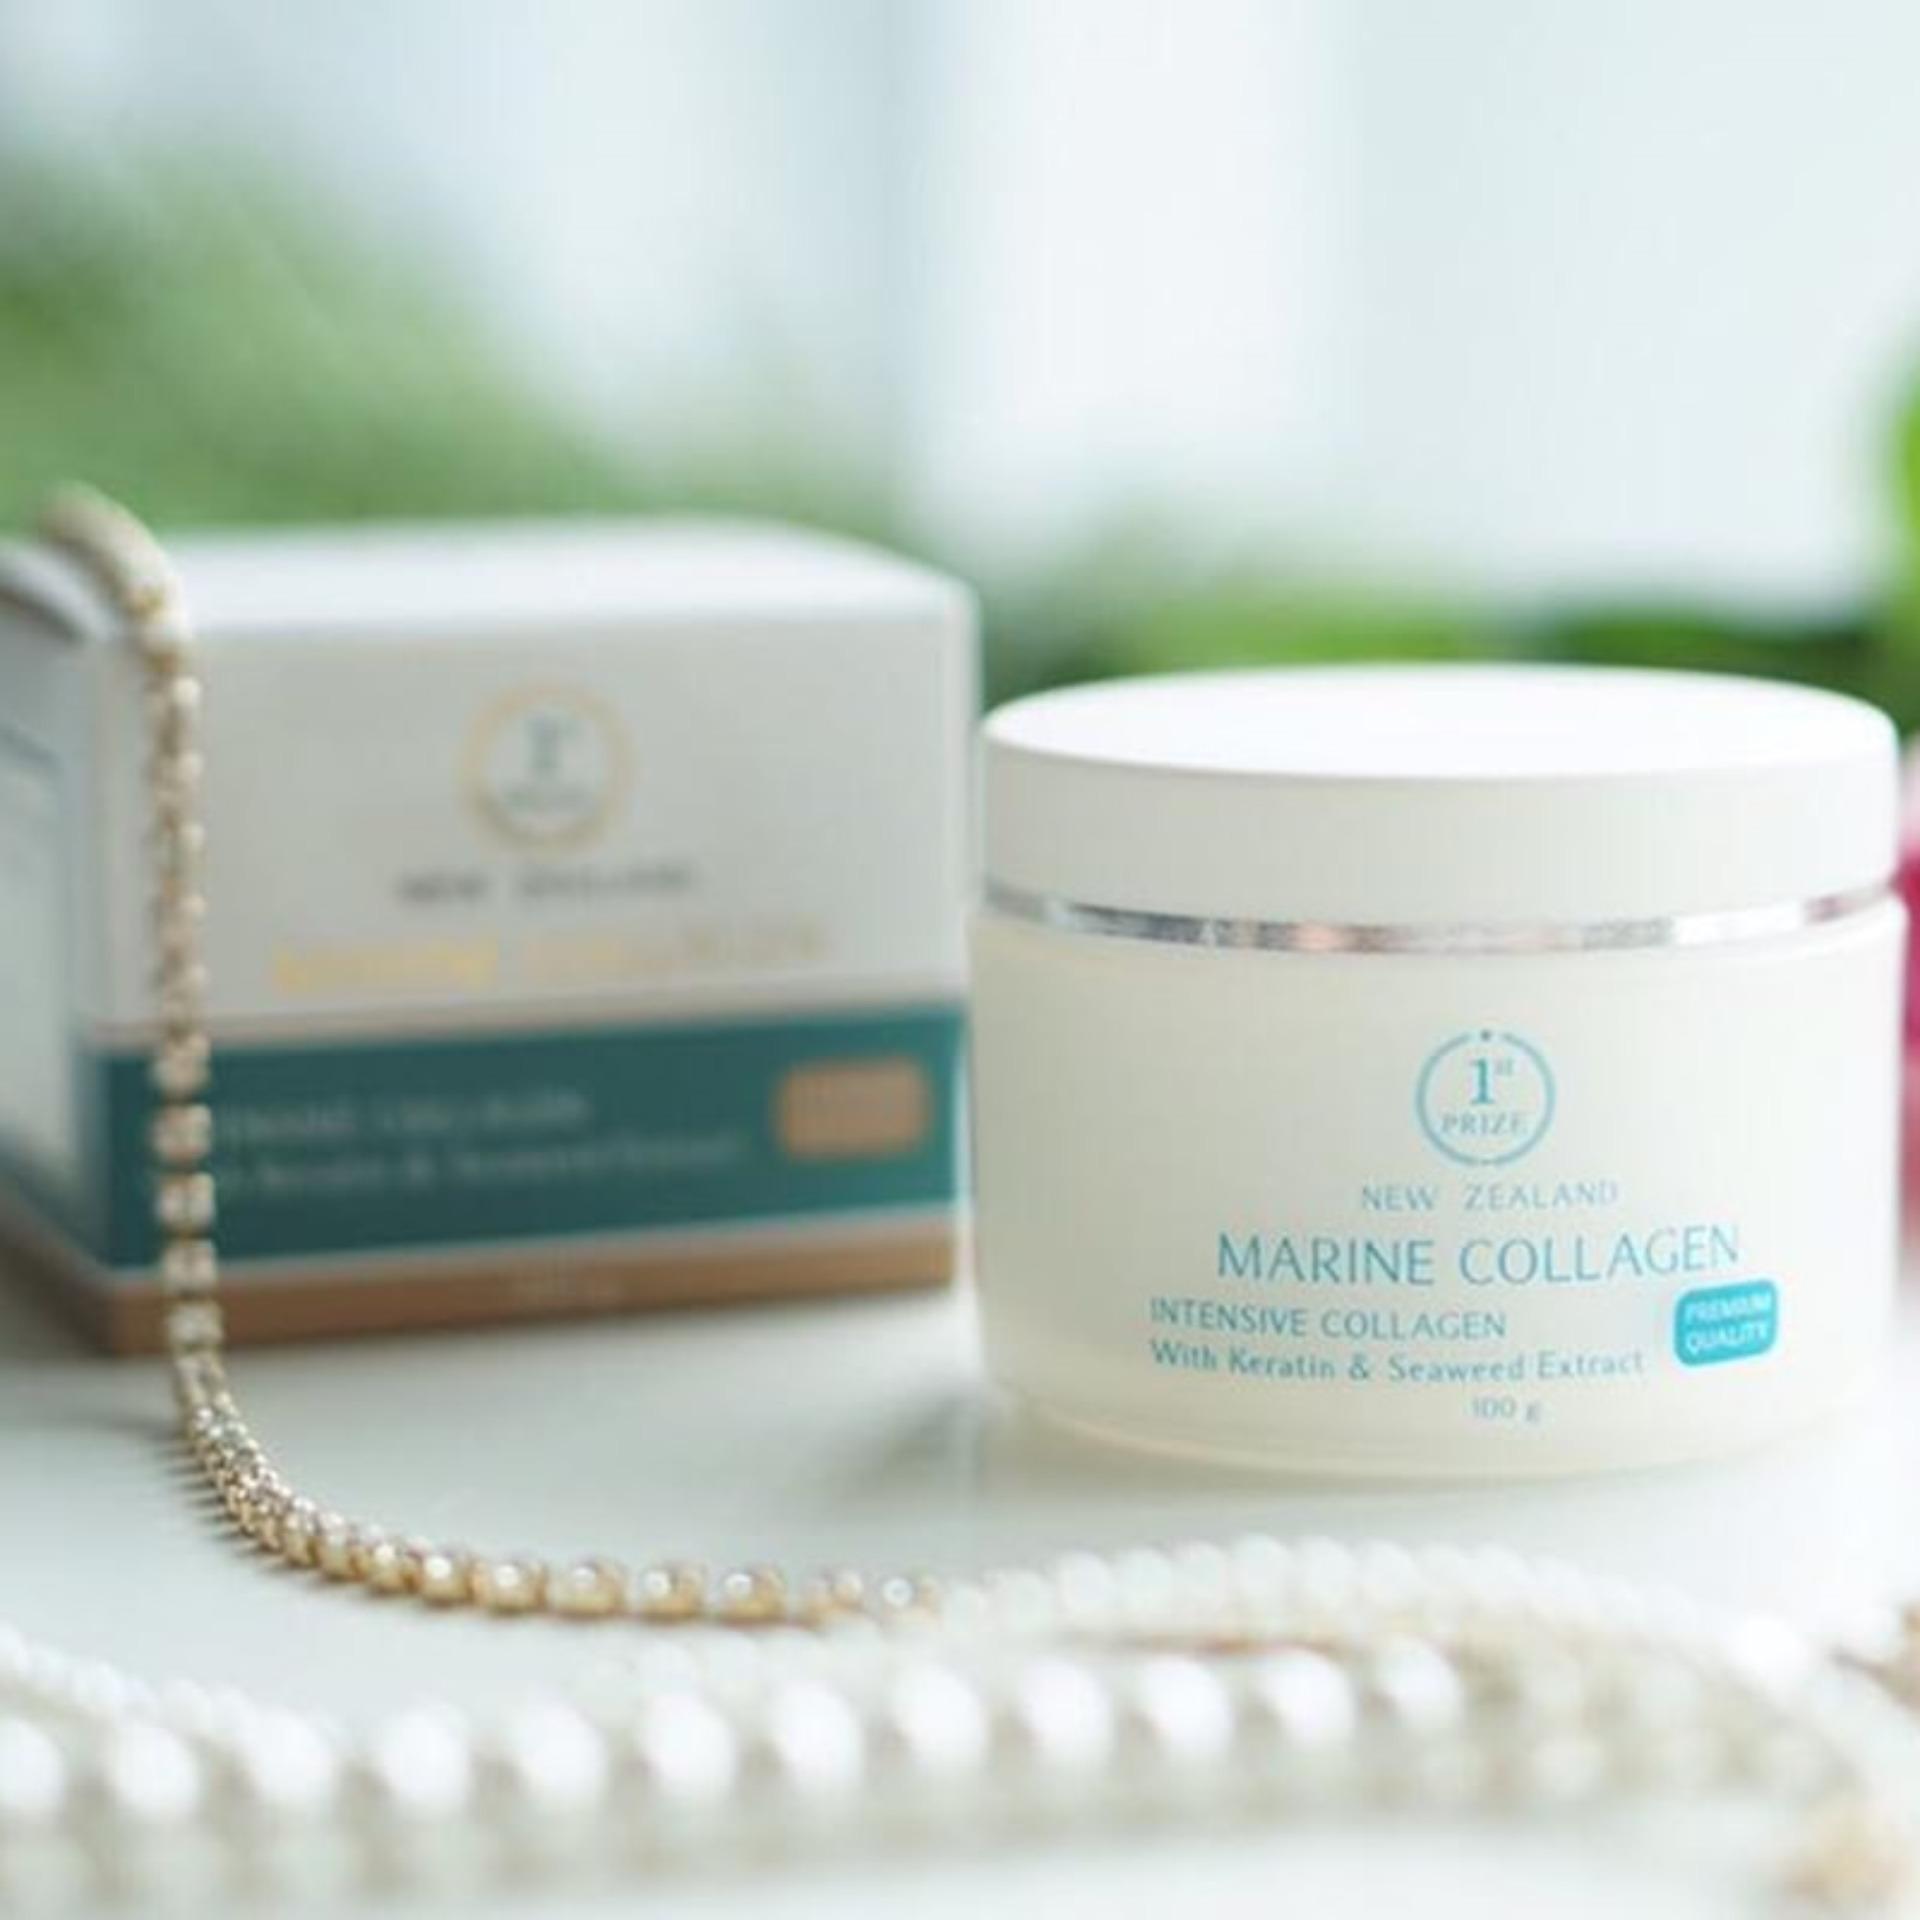 (ส่งฟรี ของแท้ 100%) Marine Collagen from New Zealand #มารีน #คอลลาเจน จากประเทศนิวซีแลนด์ (1 กระปุก)